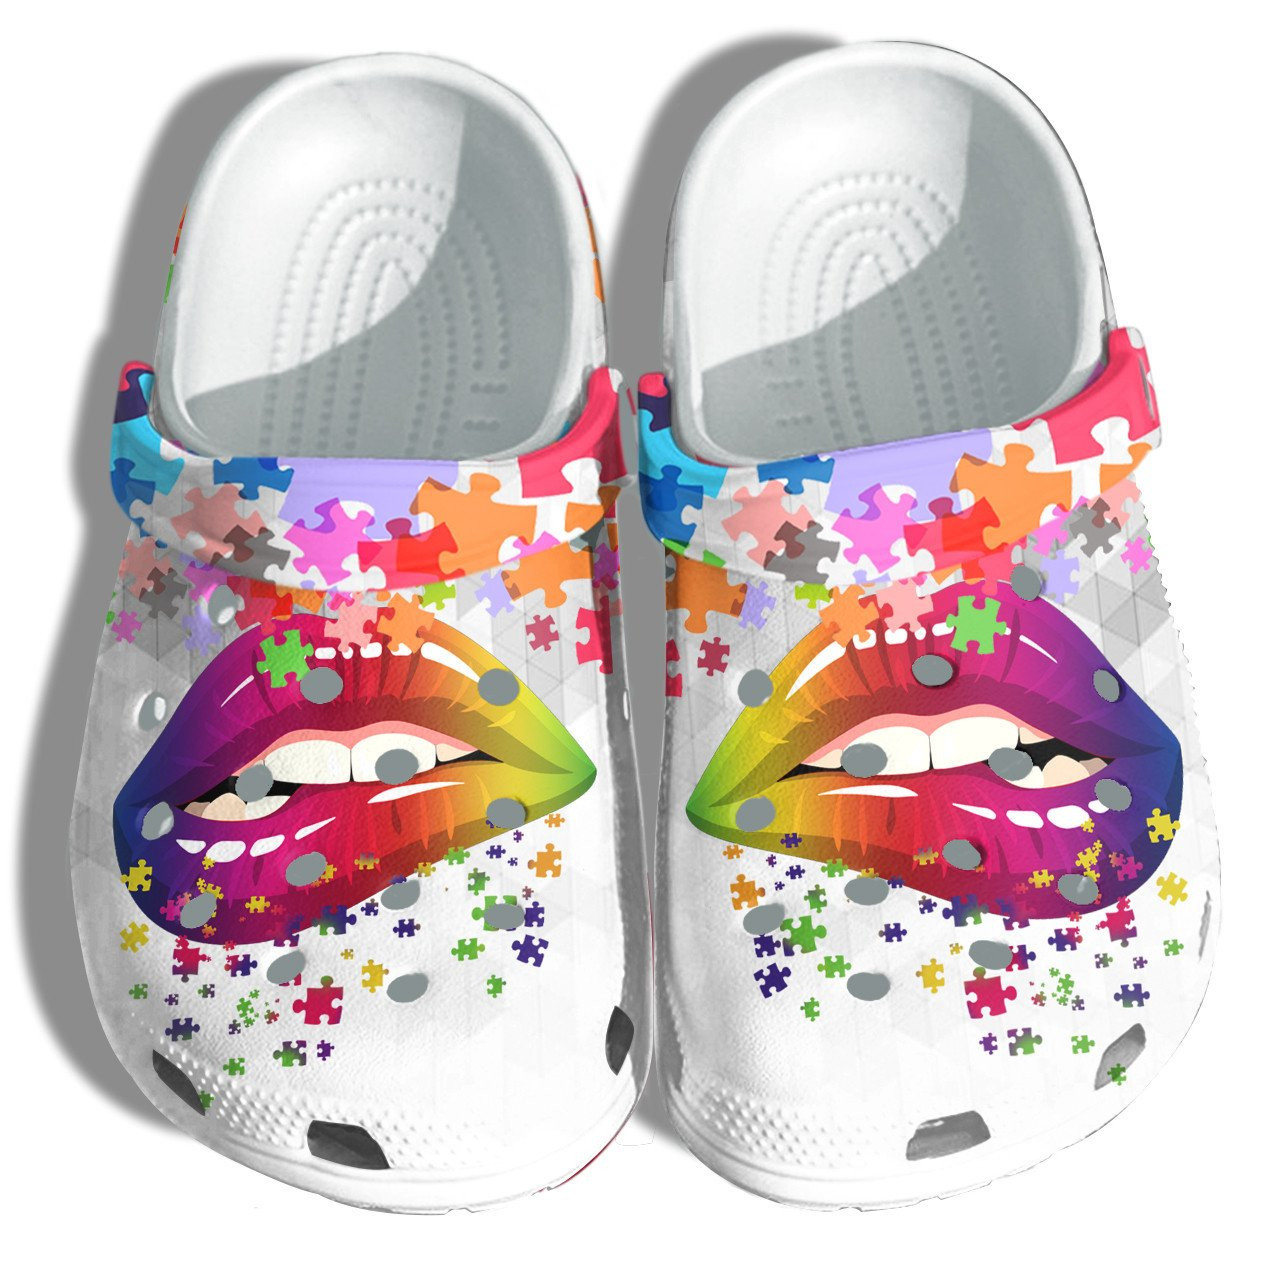 Rainbow Lip Autism Awareness Puzzle Crocs Shoes Clogs - Be Kind Lgbt Crocs Shoes Clogs Daughter Women